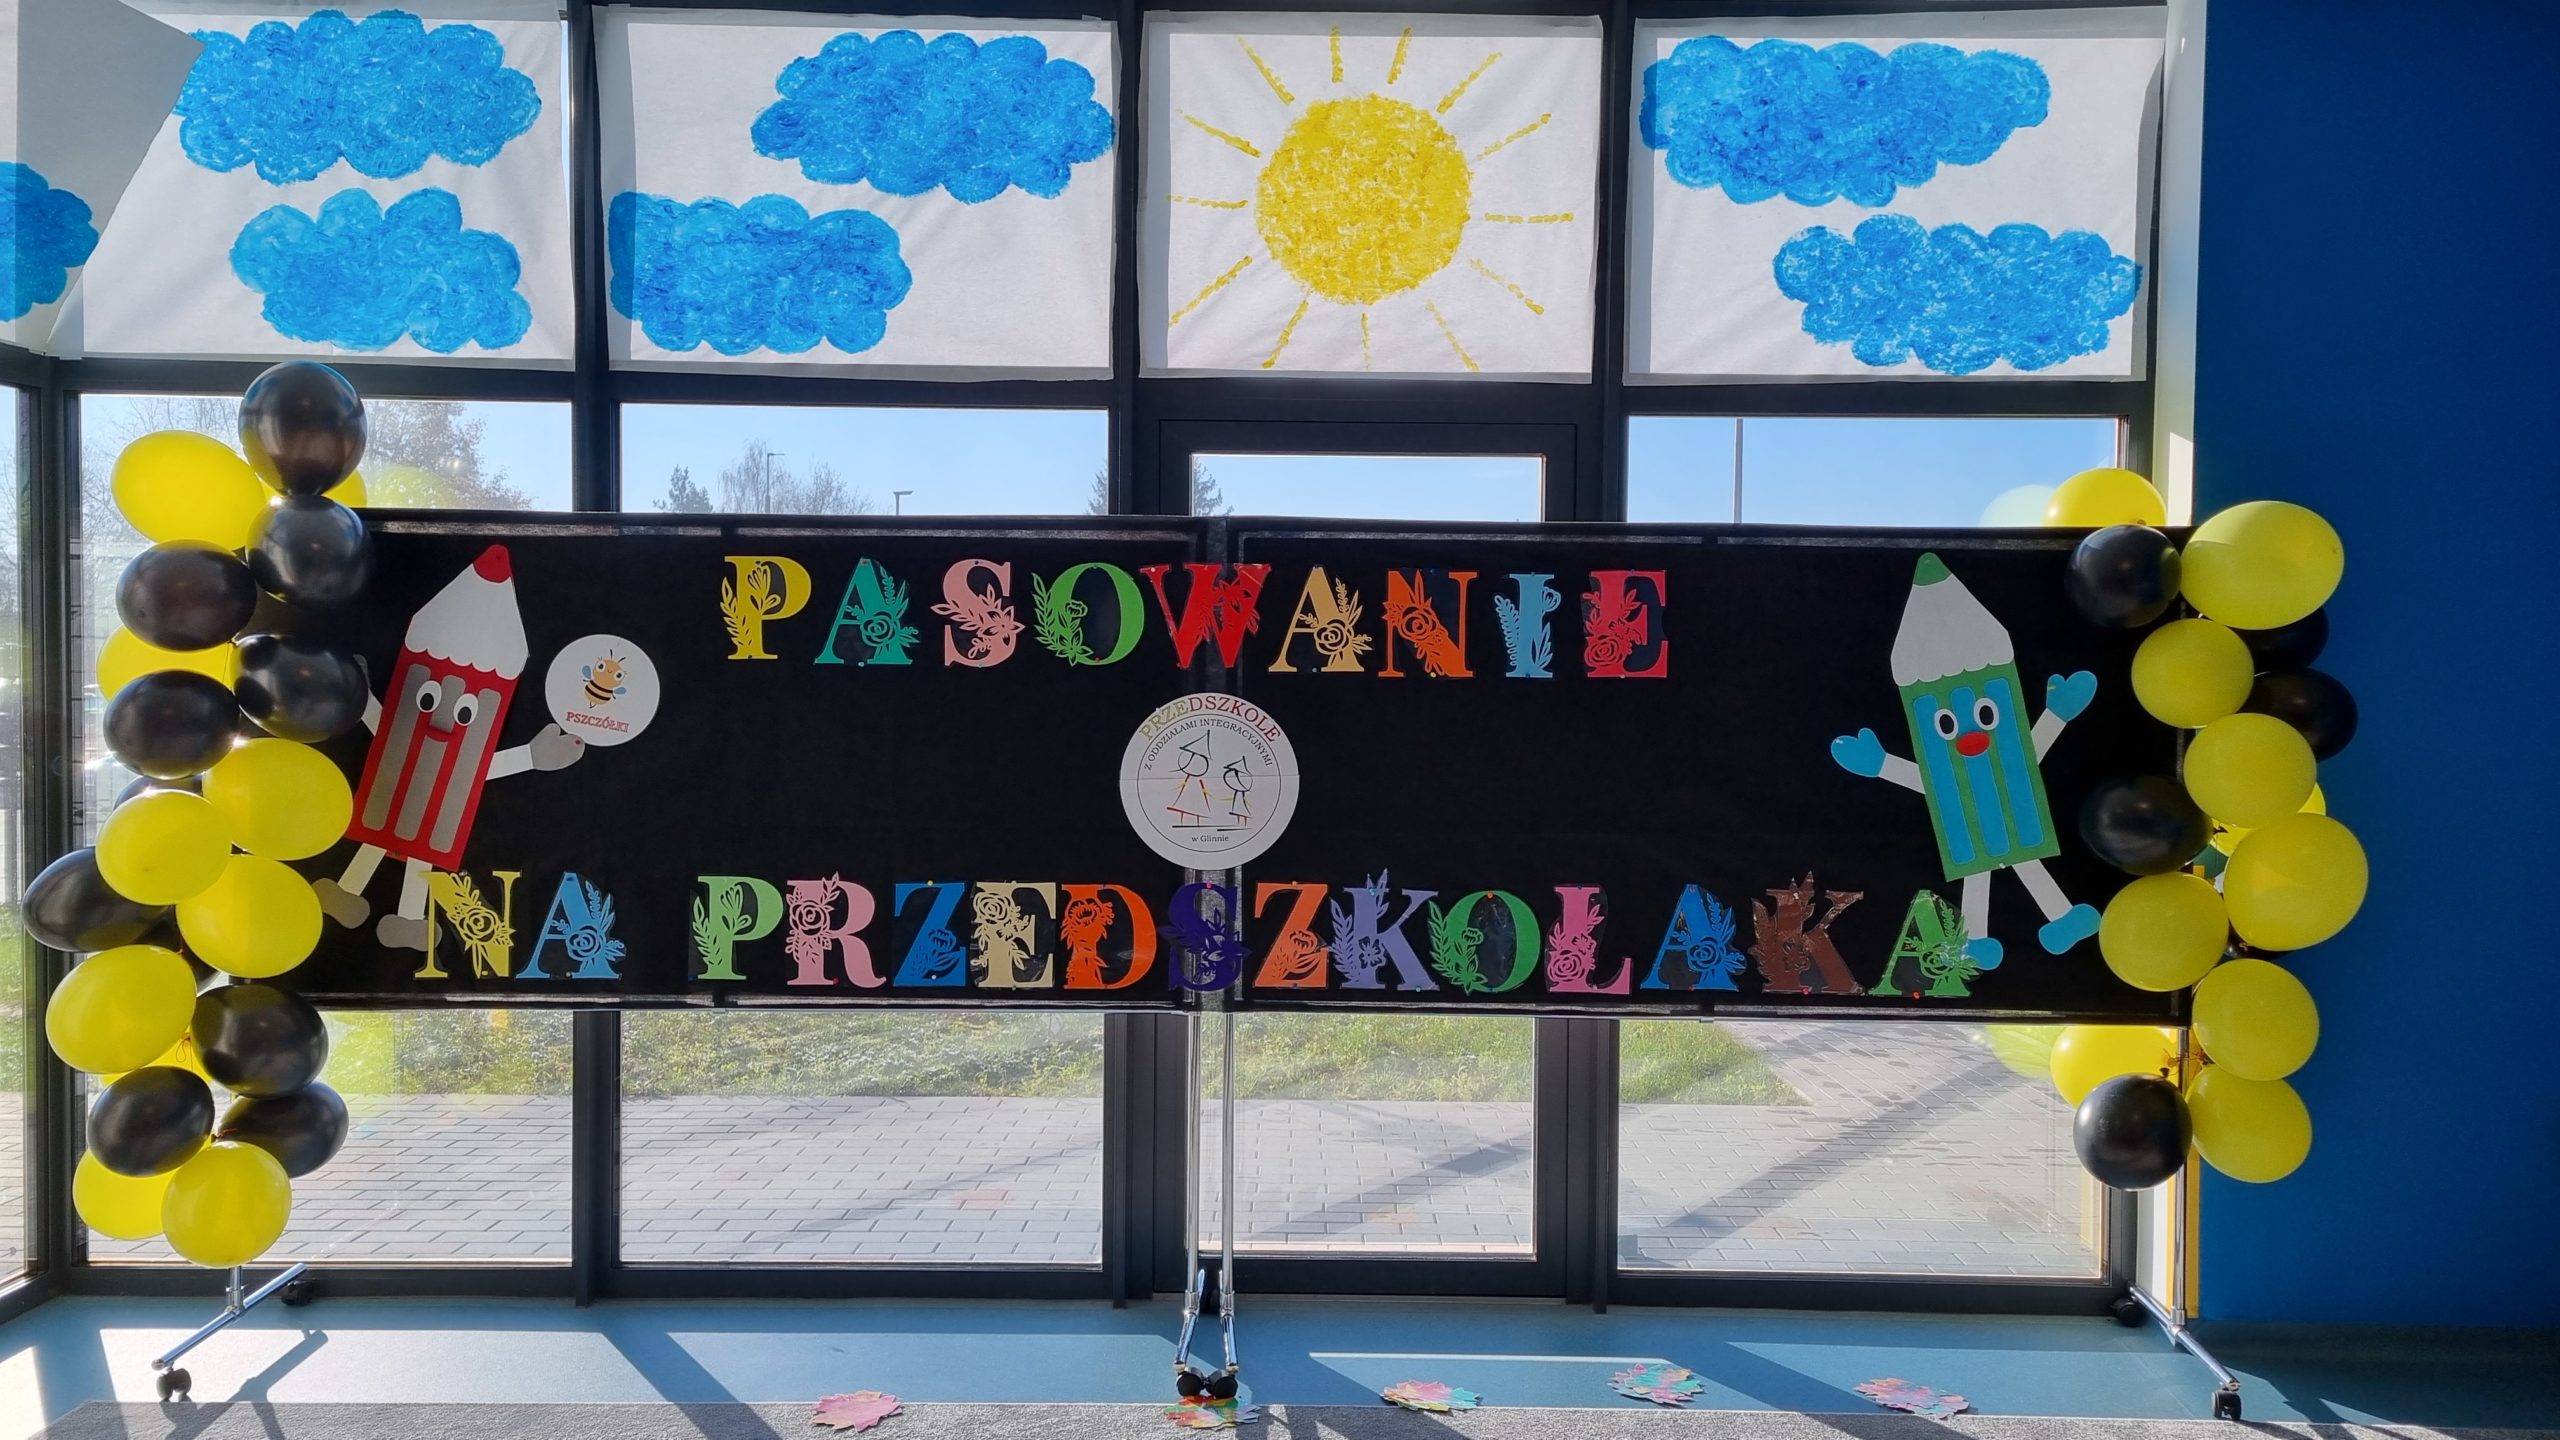 Idą sobie przedszkolaki… pasowanie dzieci z przedszkola w Glinnie!